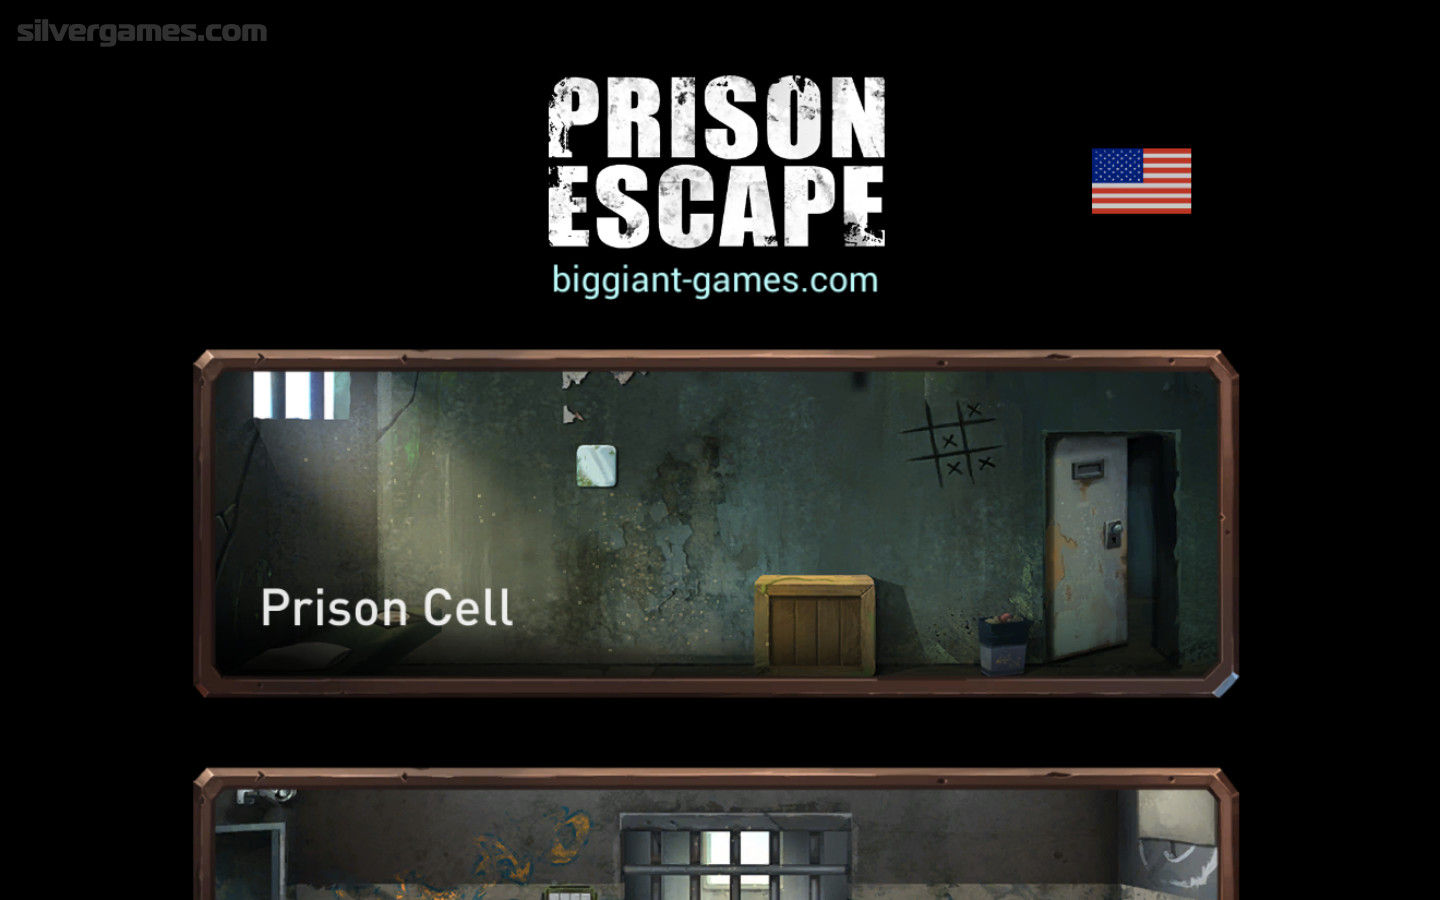 Prison Escape Puzzle: Adventure - Play UNBLOCKED Prison Escape